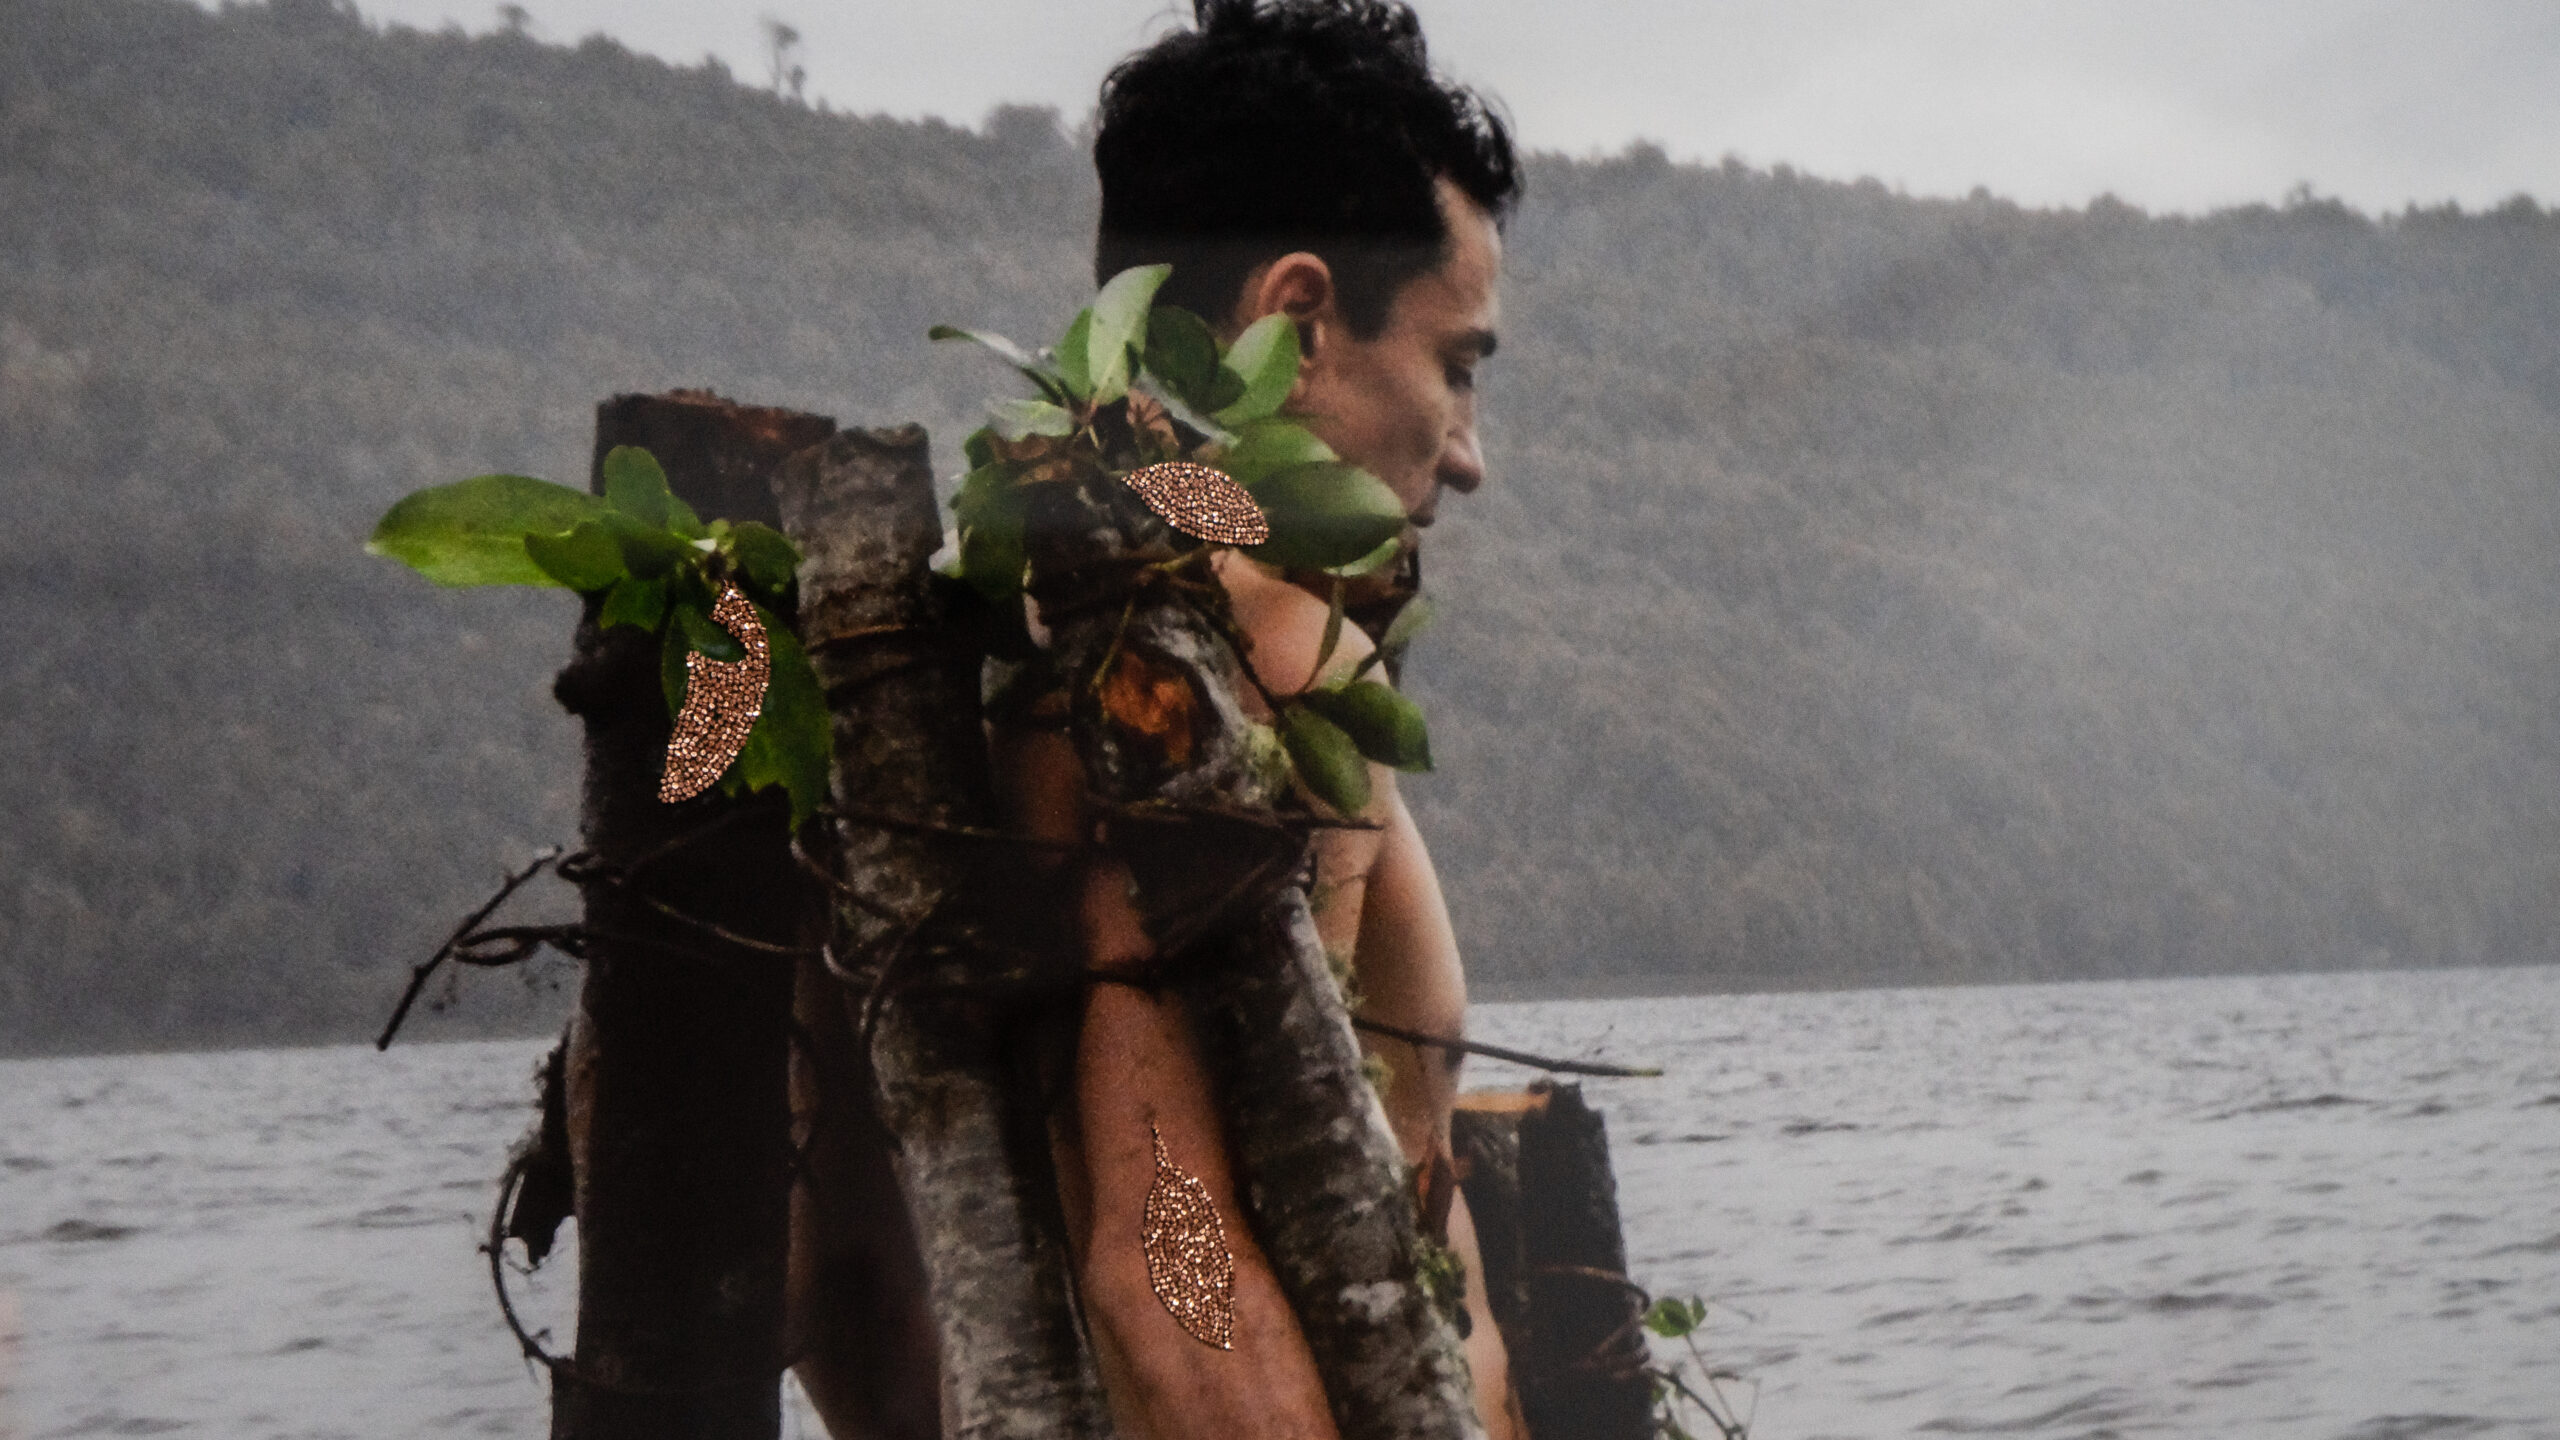 David Corvalán, “Refugio 2”, 2019-2020, fotografía intervenida de registro performático en Lago Tarahuín, Chiloé, abril 2019. Cortesía del artista